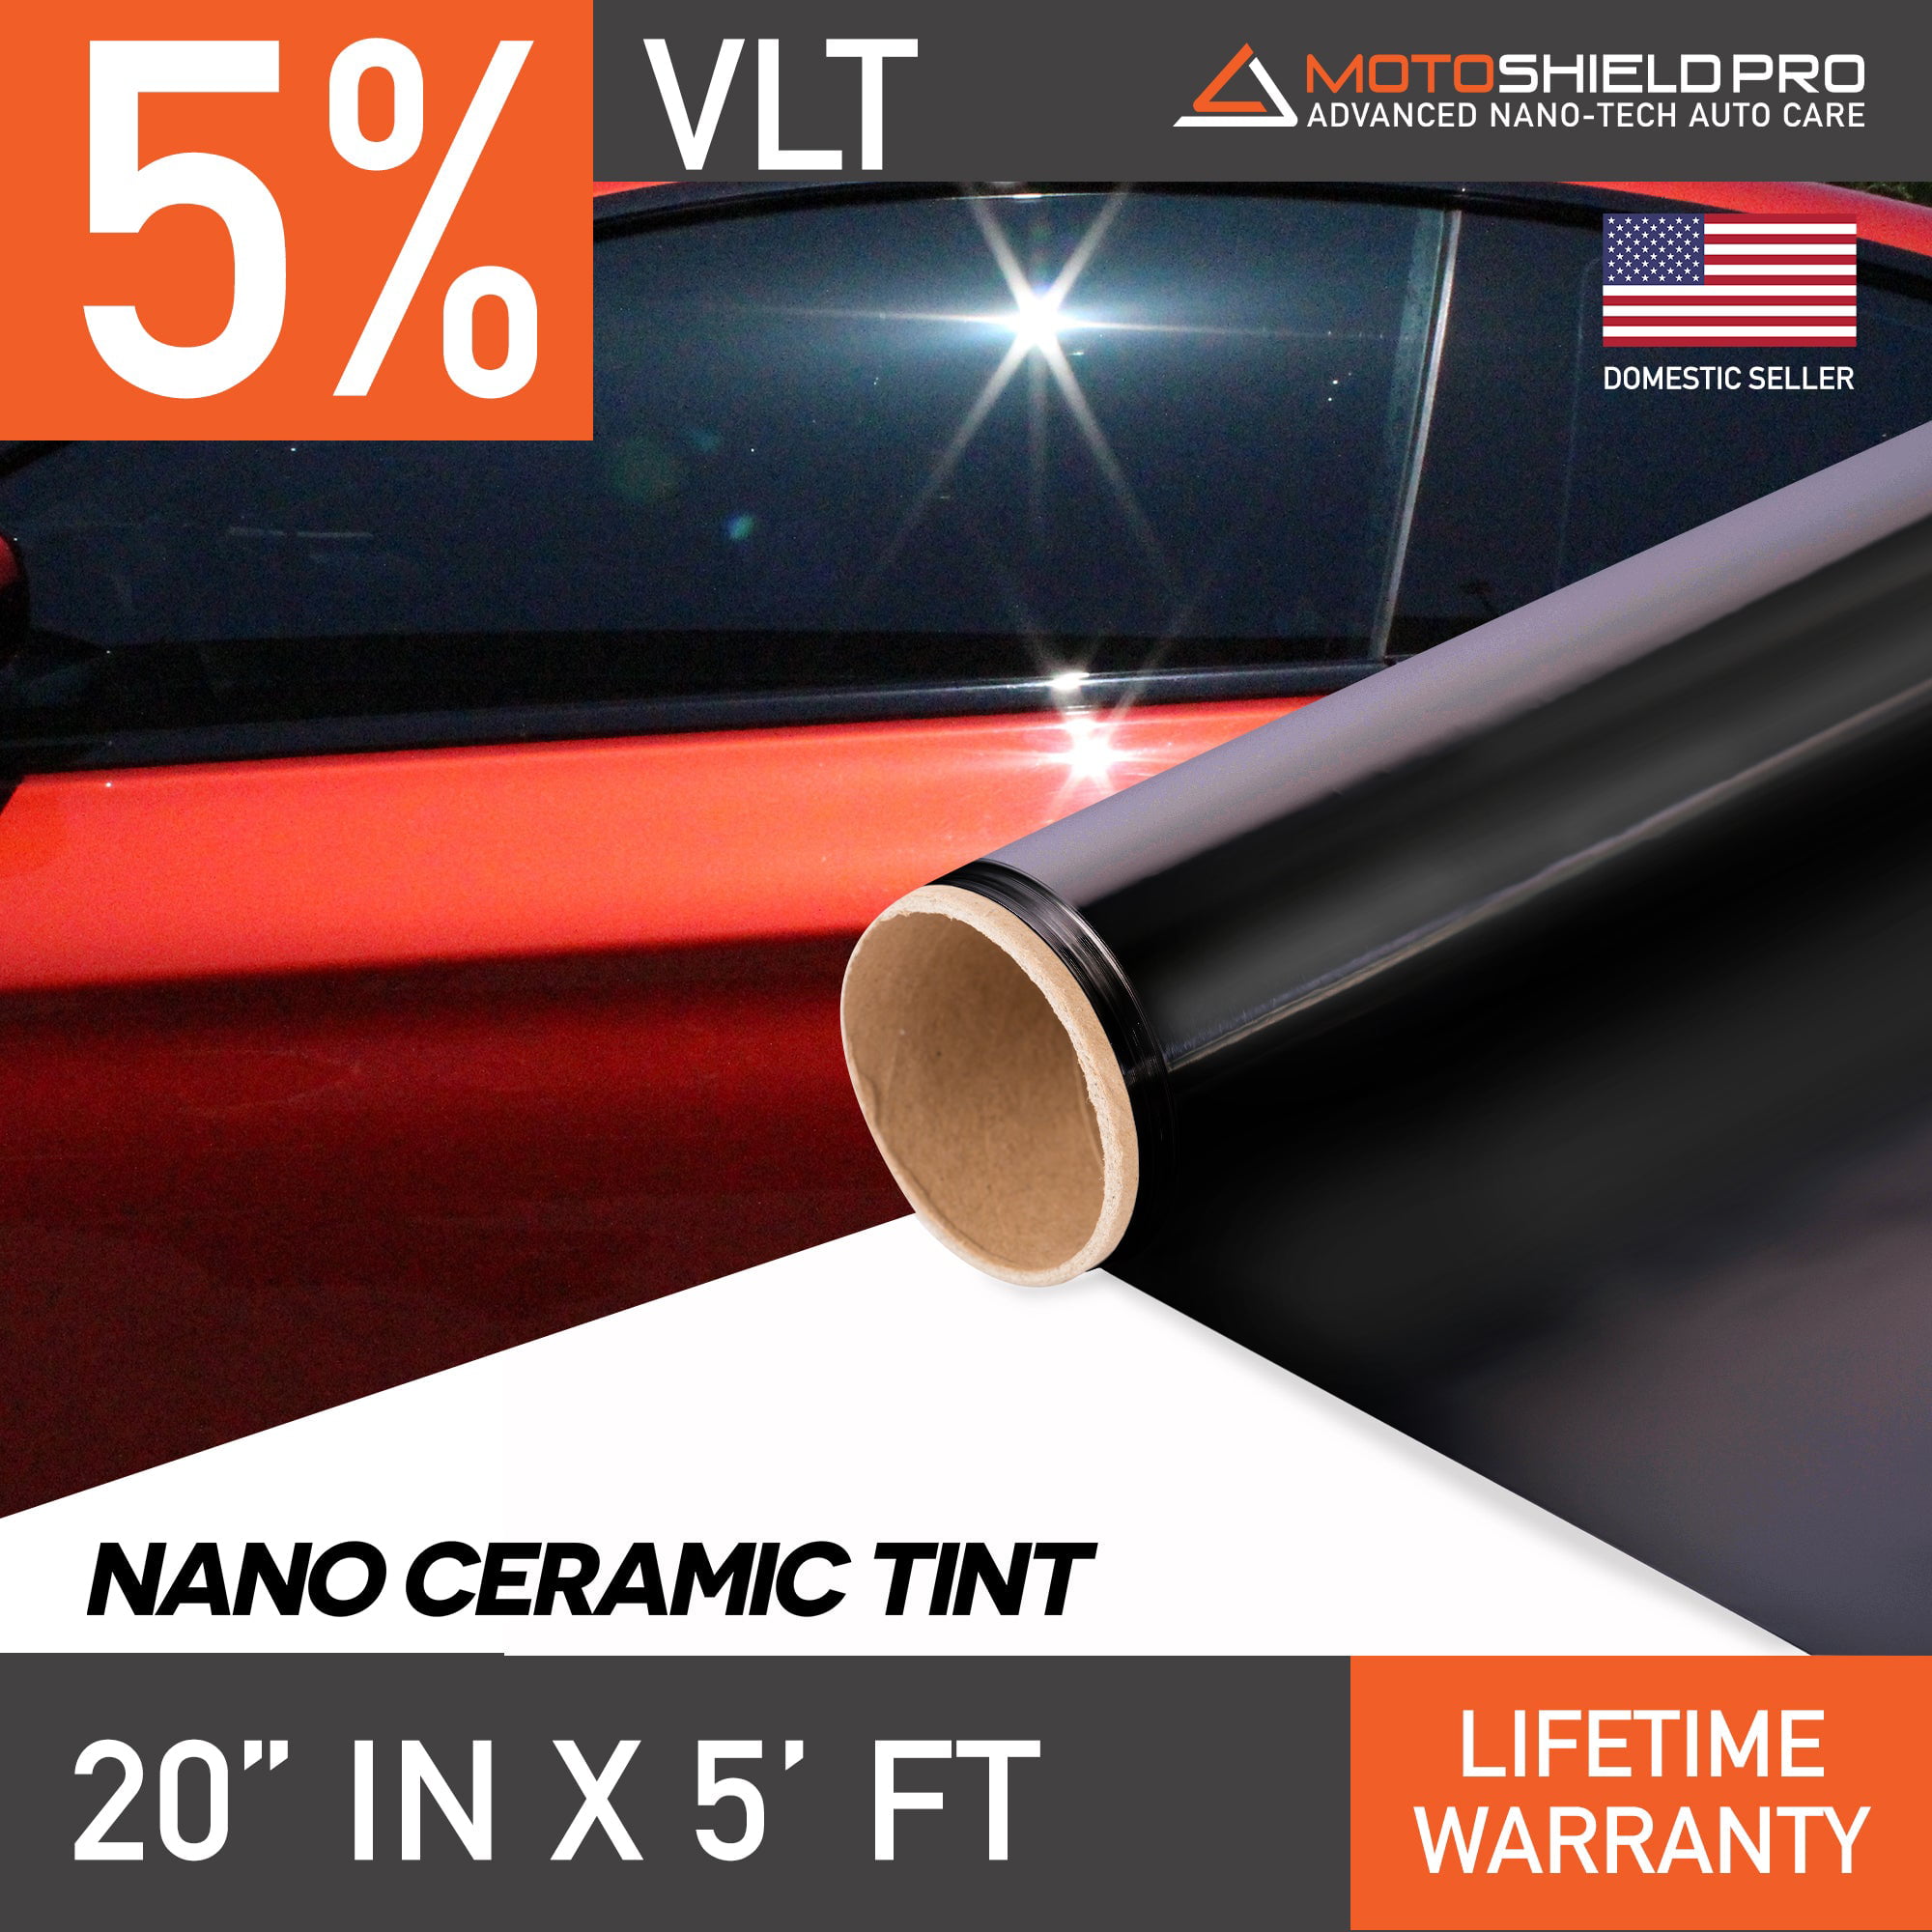 スマートスクラブス MotoShield Pro Premium Nano Ceramic Tint (35% VLT) 20インチx  15フィートロール|自動車用プロフェッショナルウィンドウフィルム、赤外線熱軽減UV遮断99